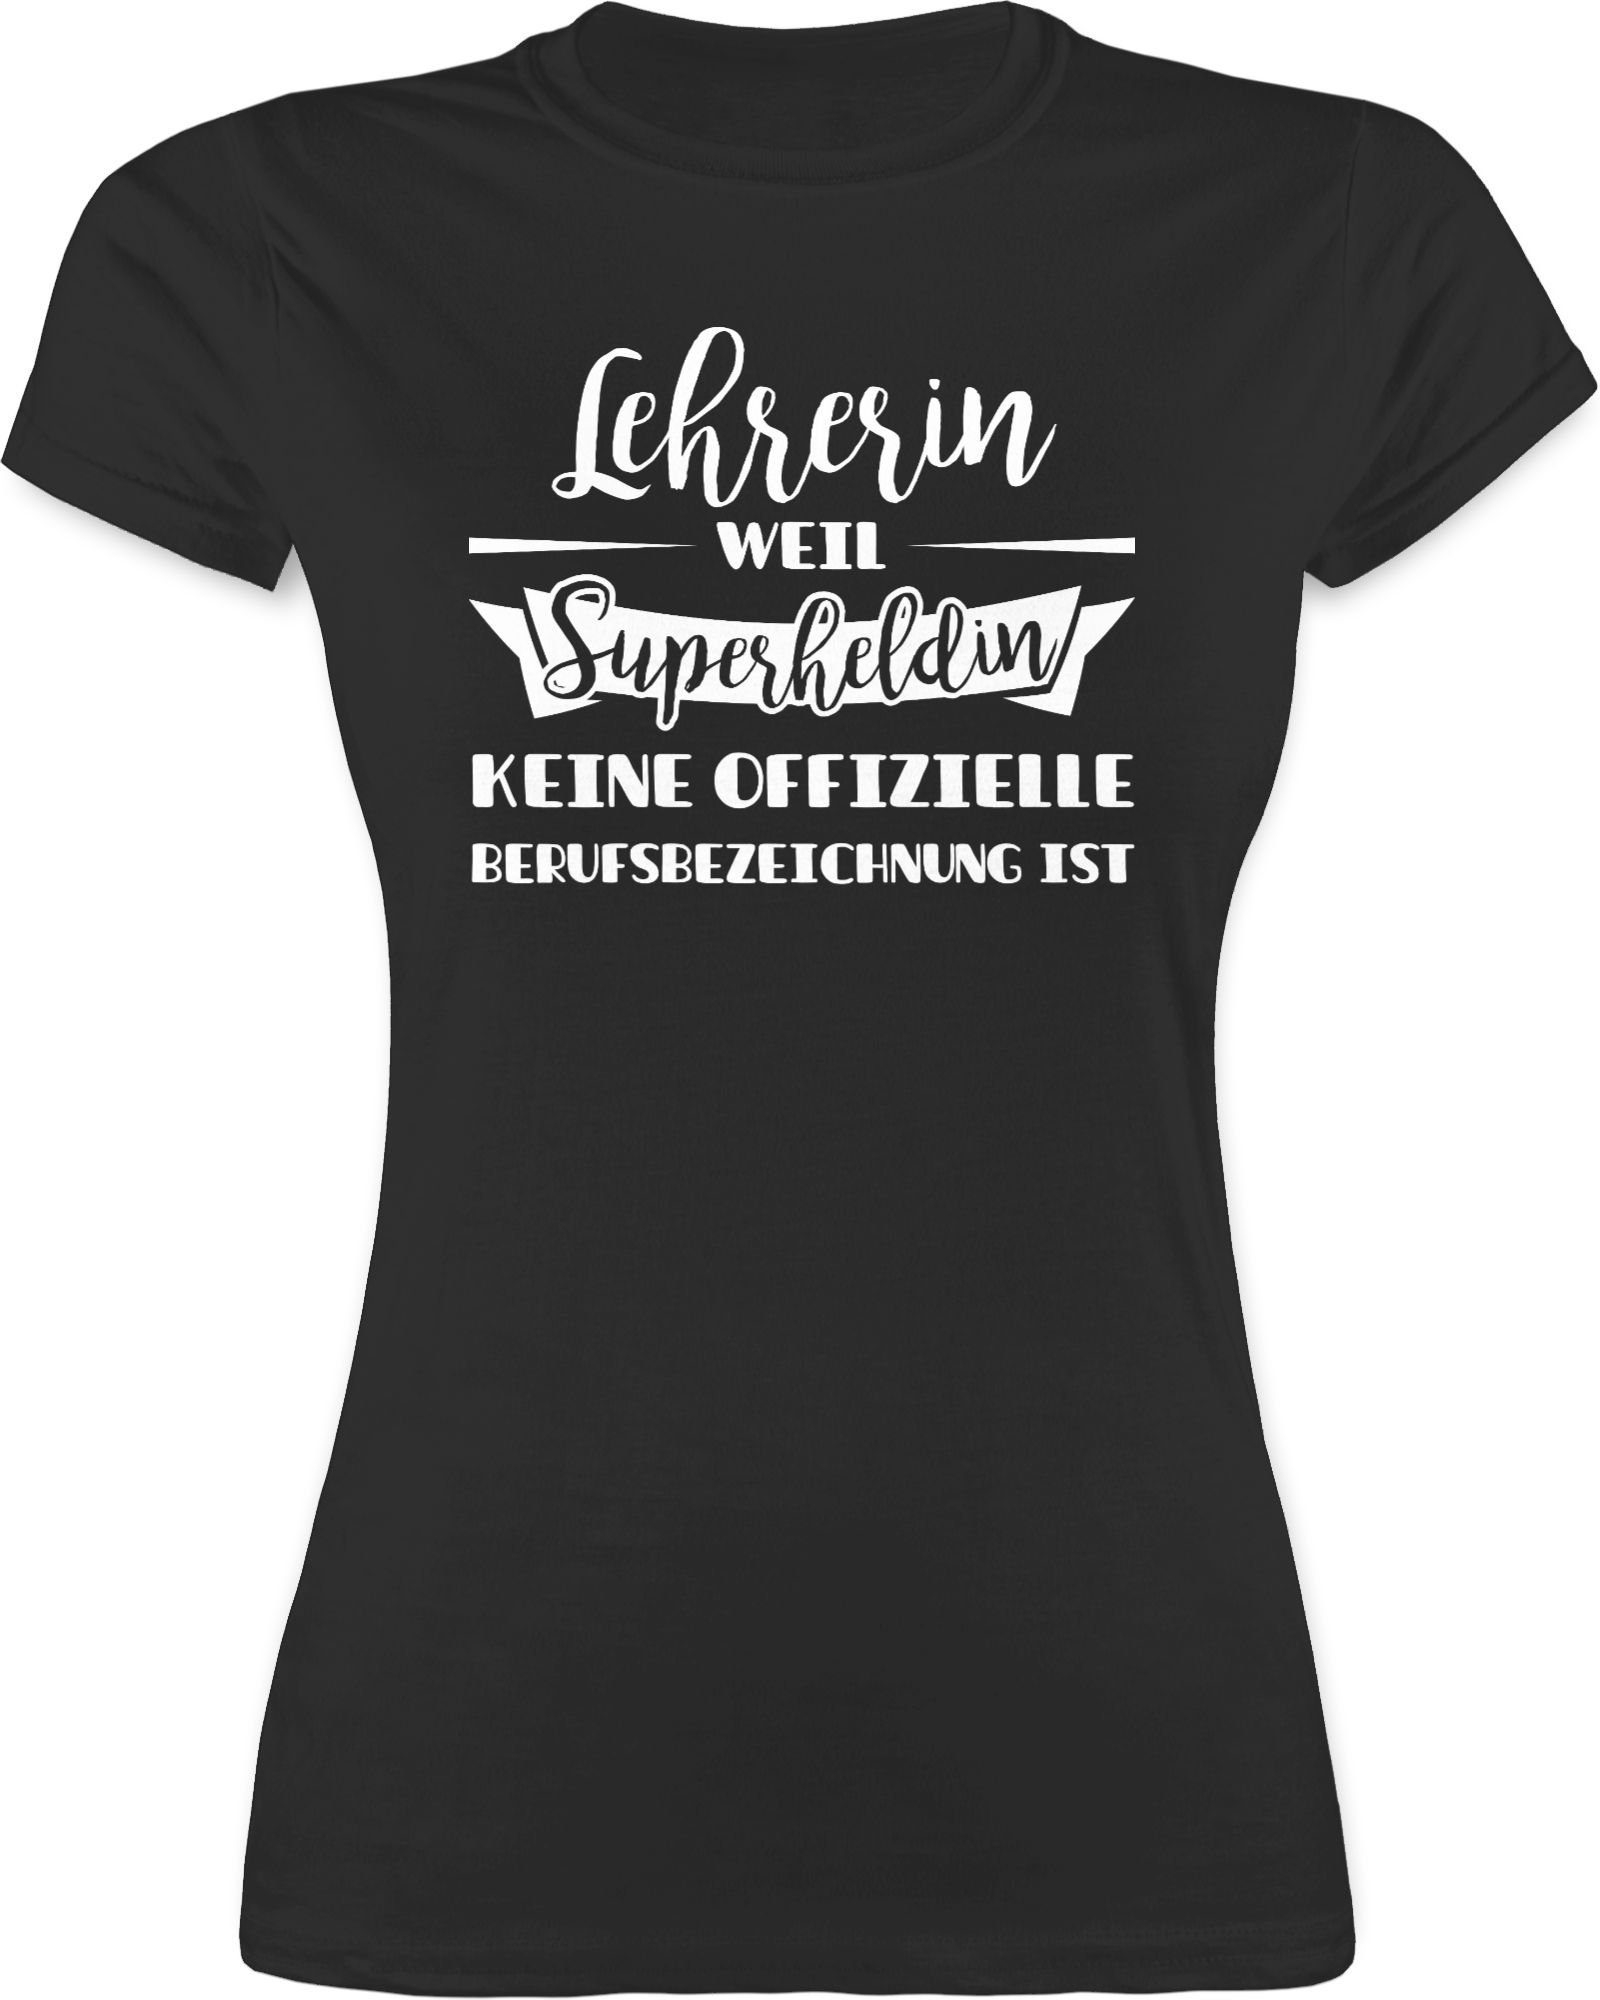 Damen Shirts Shirtracer T-Shirt Lehrerin weil Superheldin keine offizielle Berufsbezeichnung ist - Lehrer Geschenk - Damen Premi